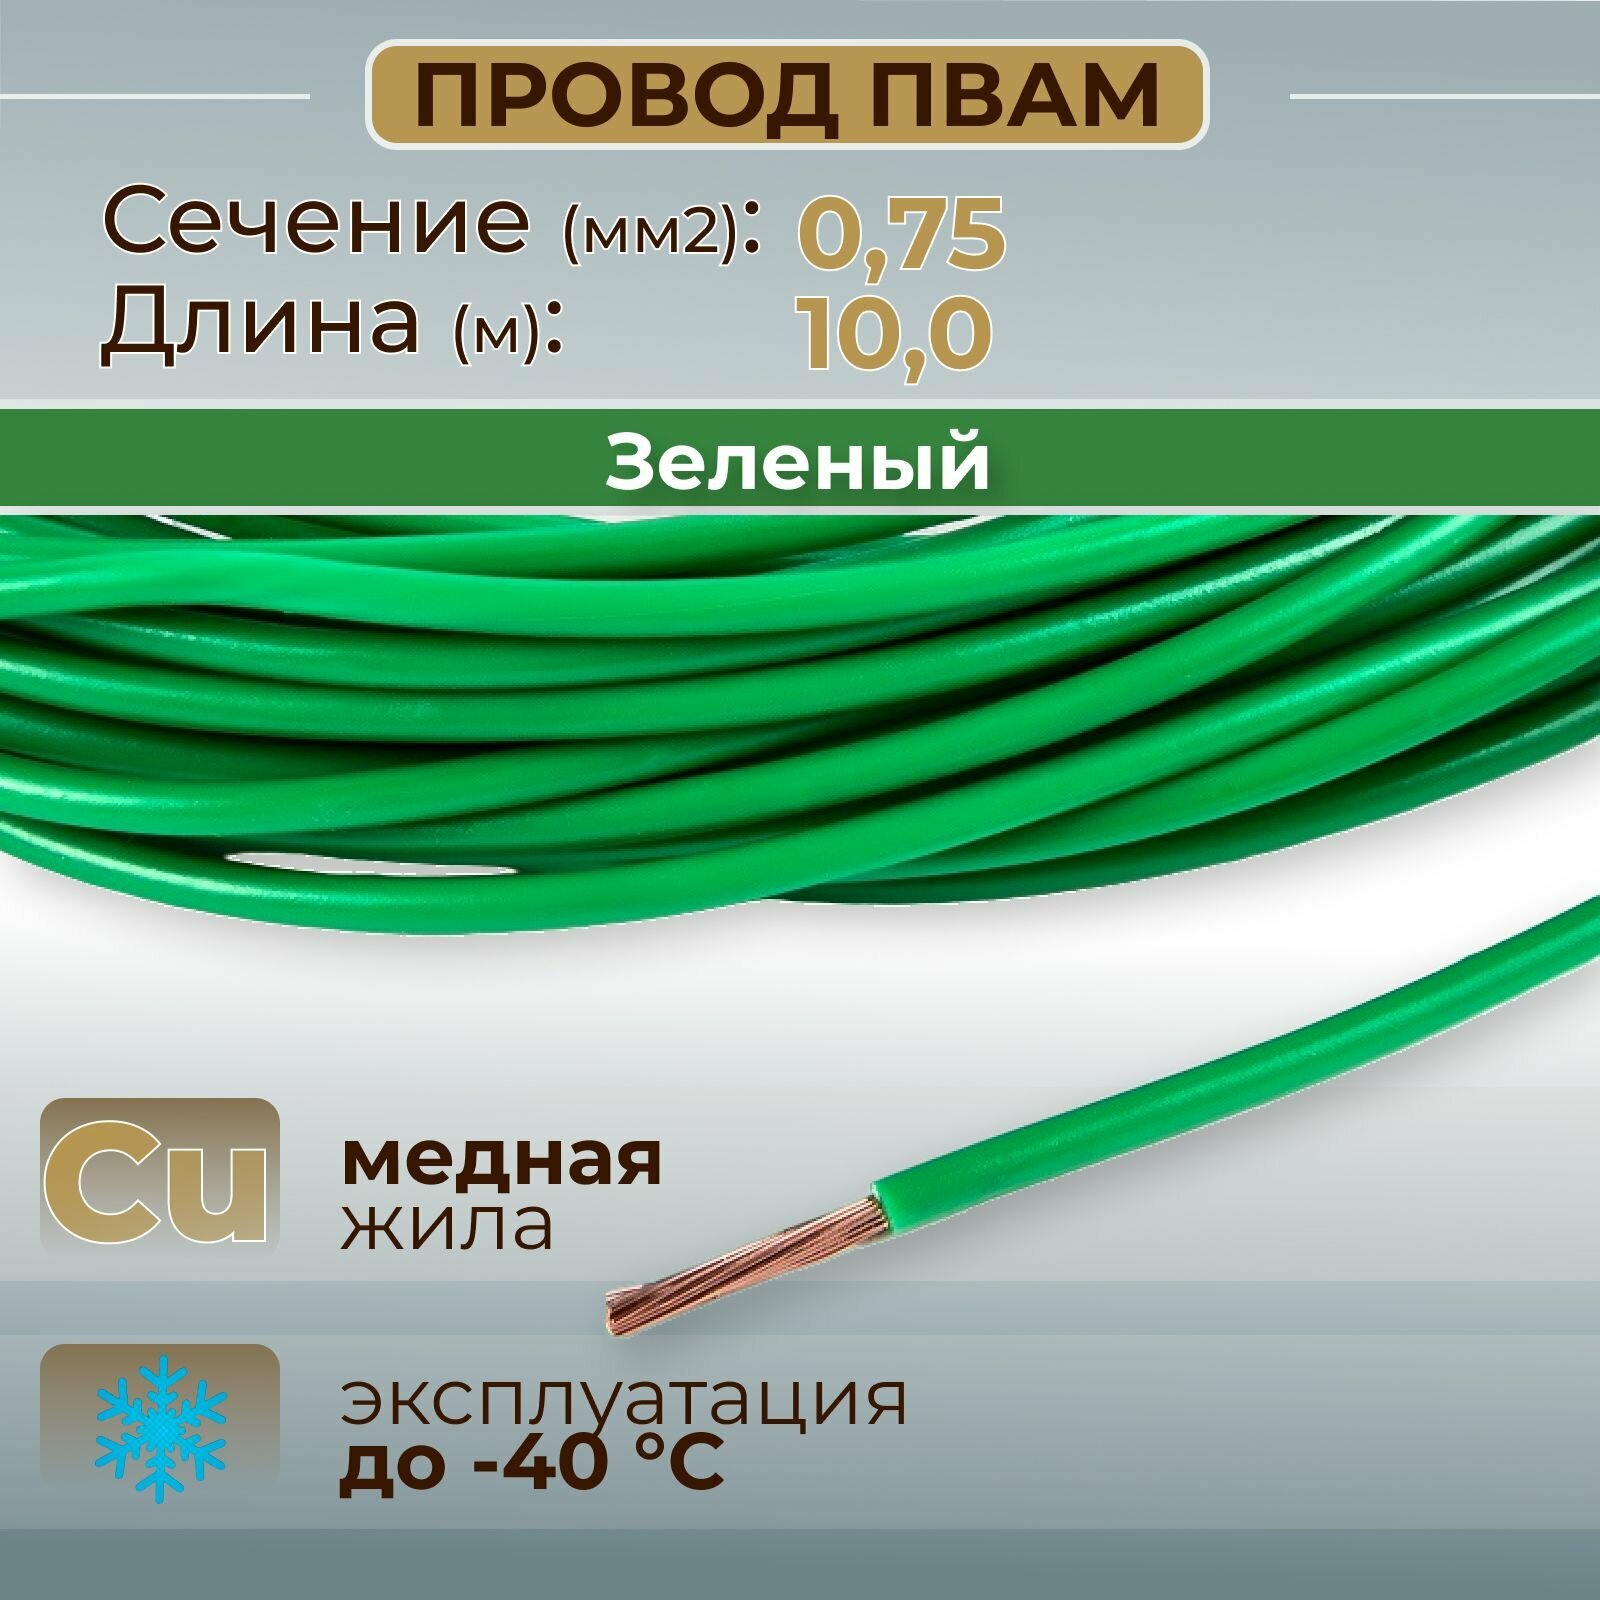 Провода автомобильные пвам цвет зеленый с сечением 0,75 кв. мм, длина 10м